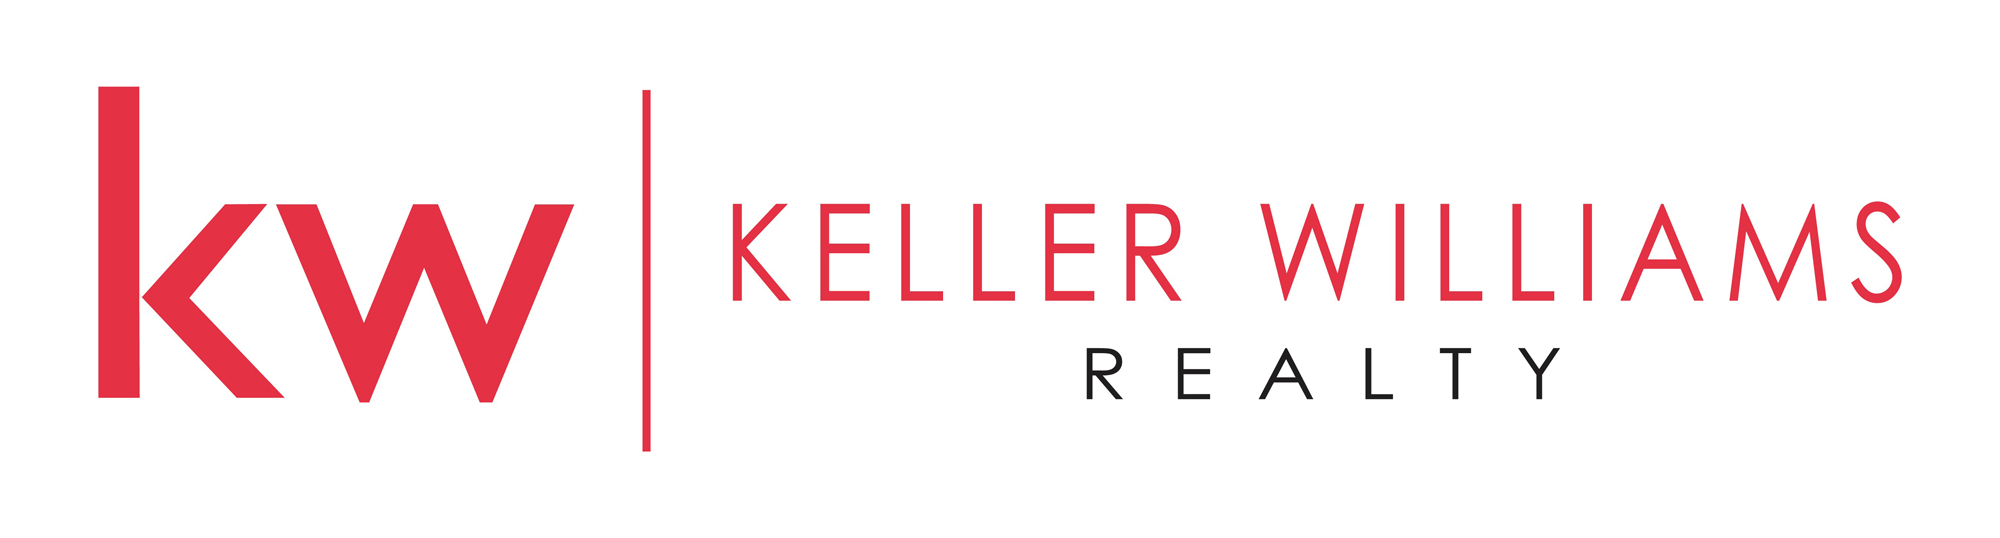 Keller Williams logo 2.jpg